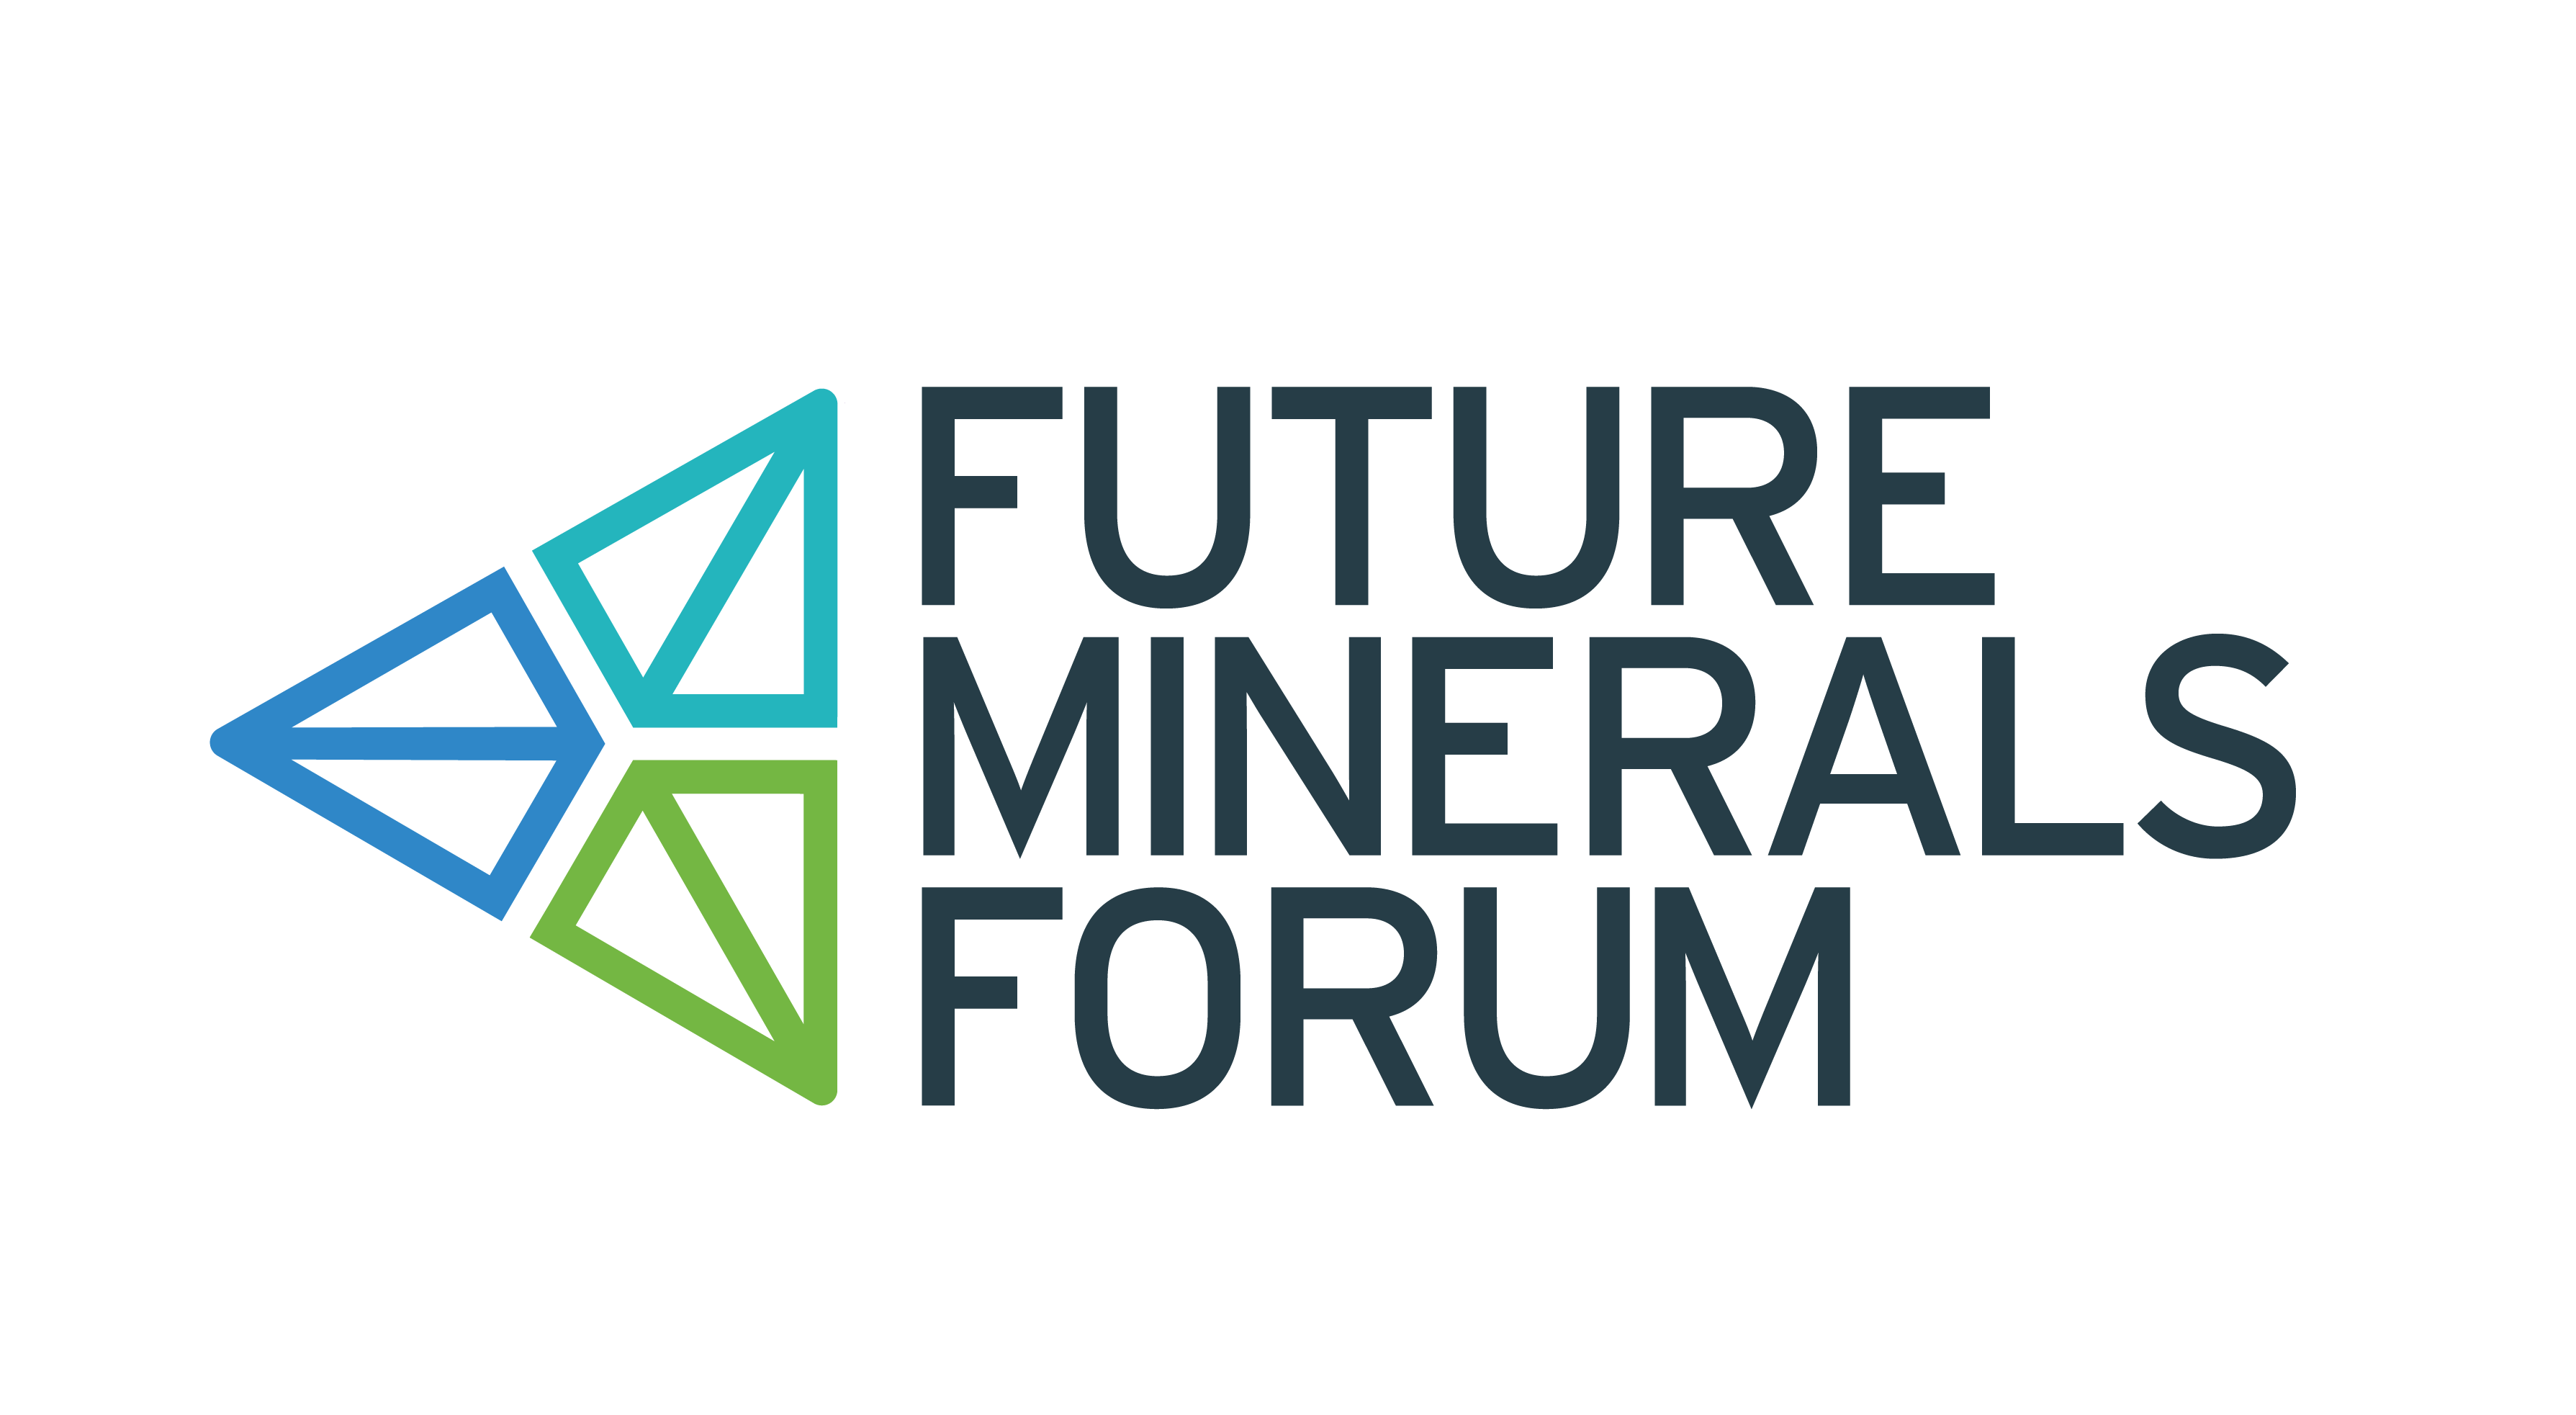 Le Forum sur les Minéraux du Futur fait progresser le débat mondial sur la transition vers une énergie propre